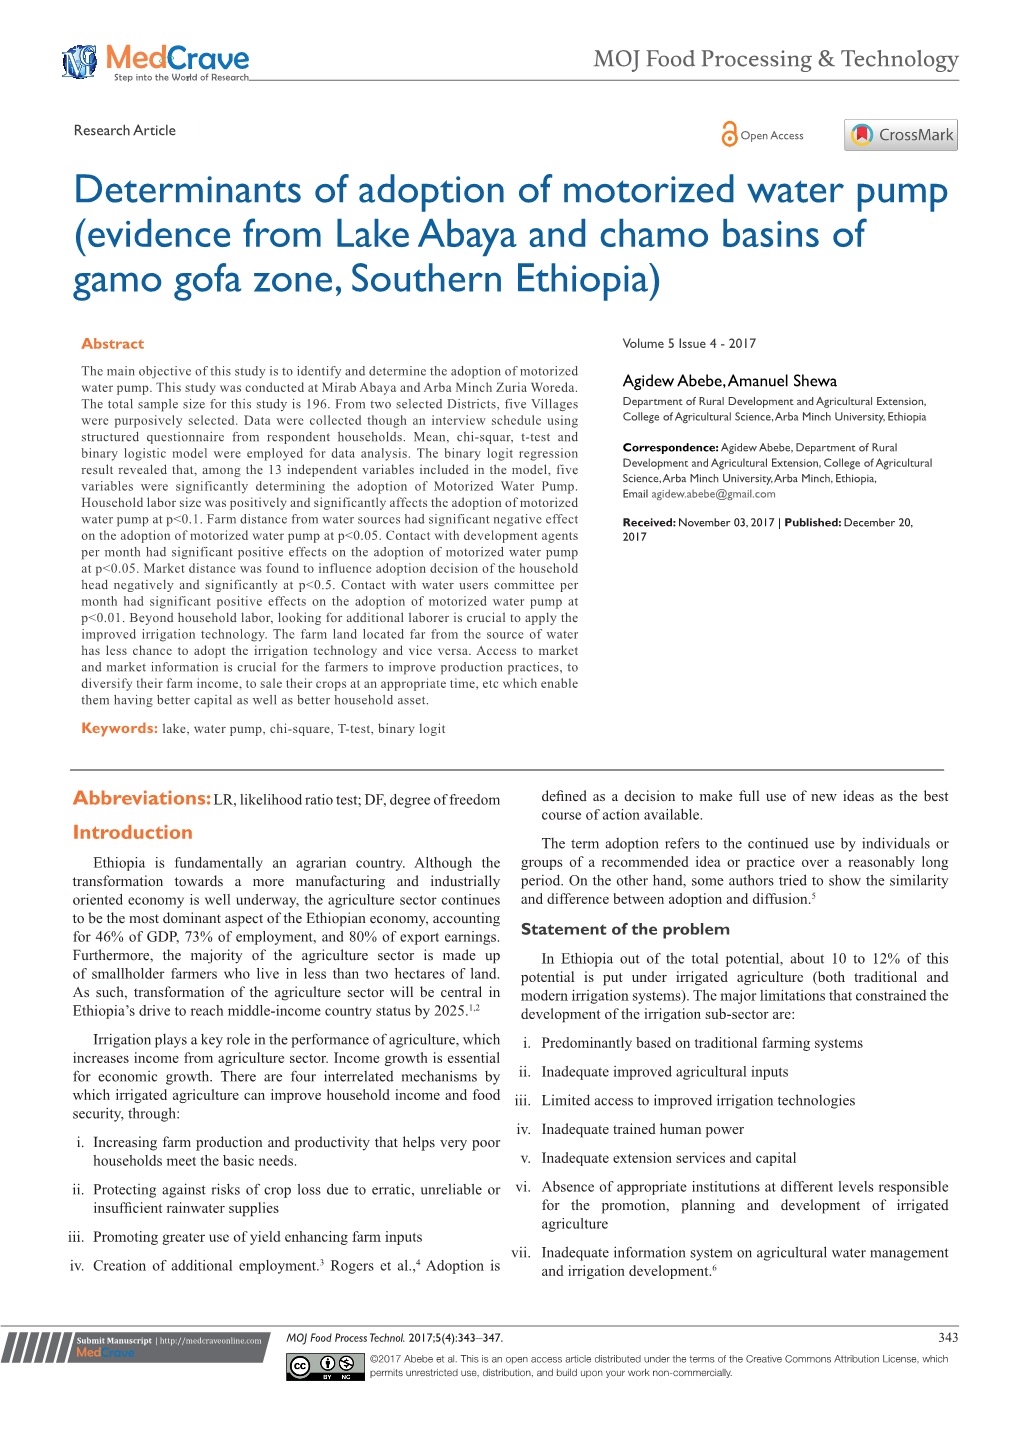 Evidence from Lake Abaya and Chamo Basins of Gamo Gofa Zone, Southern Ethiopia)